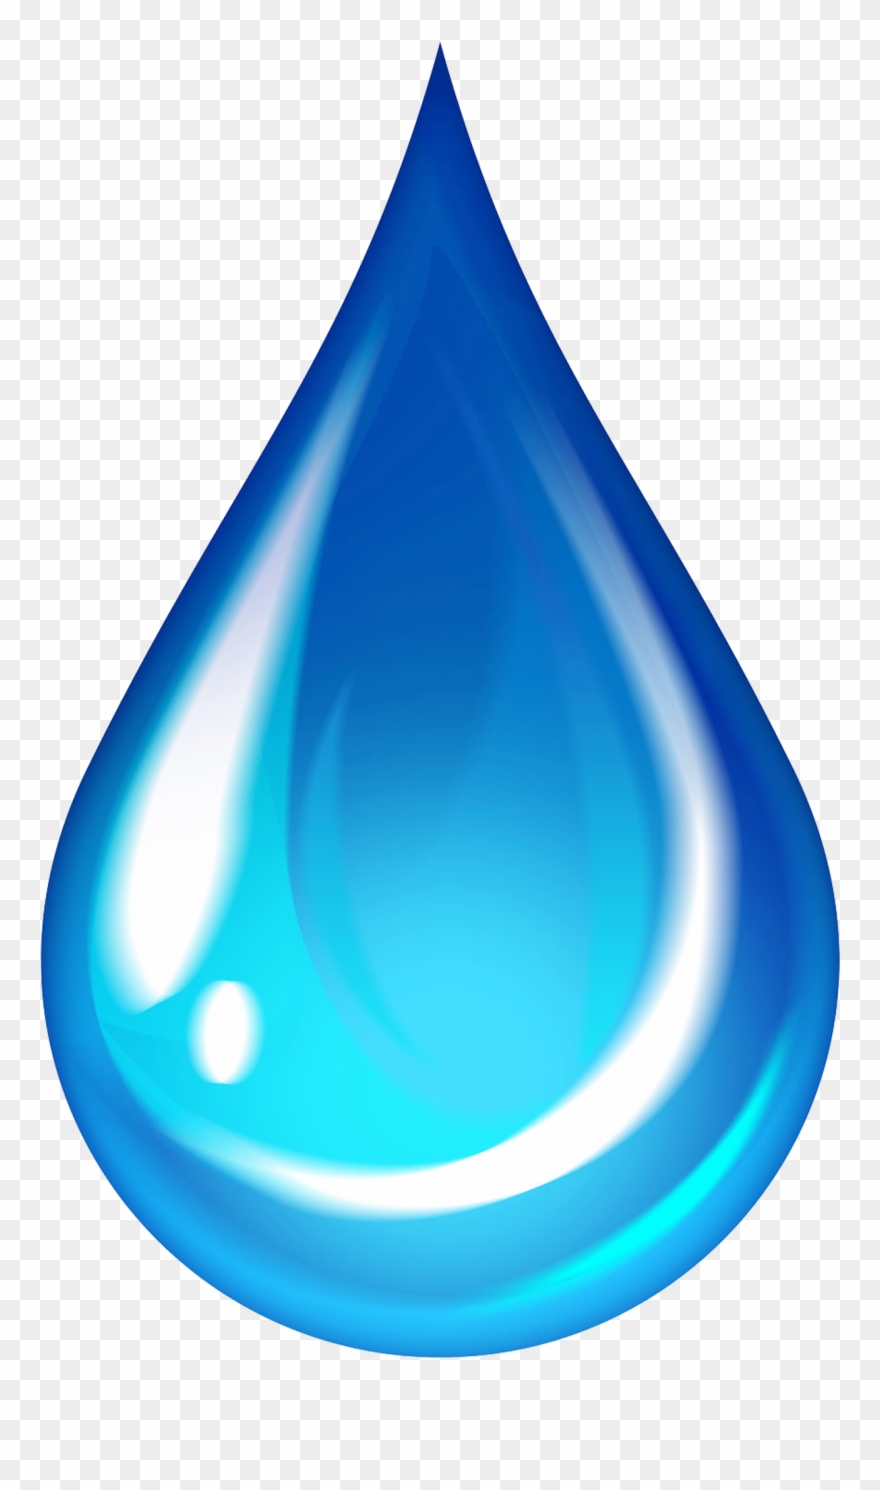 Water drop symbol.